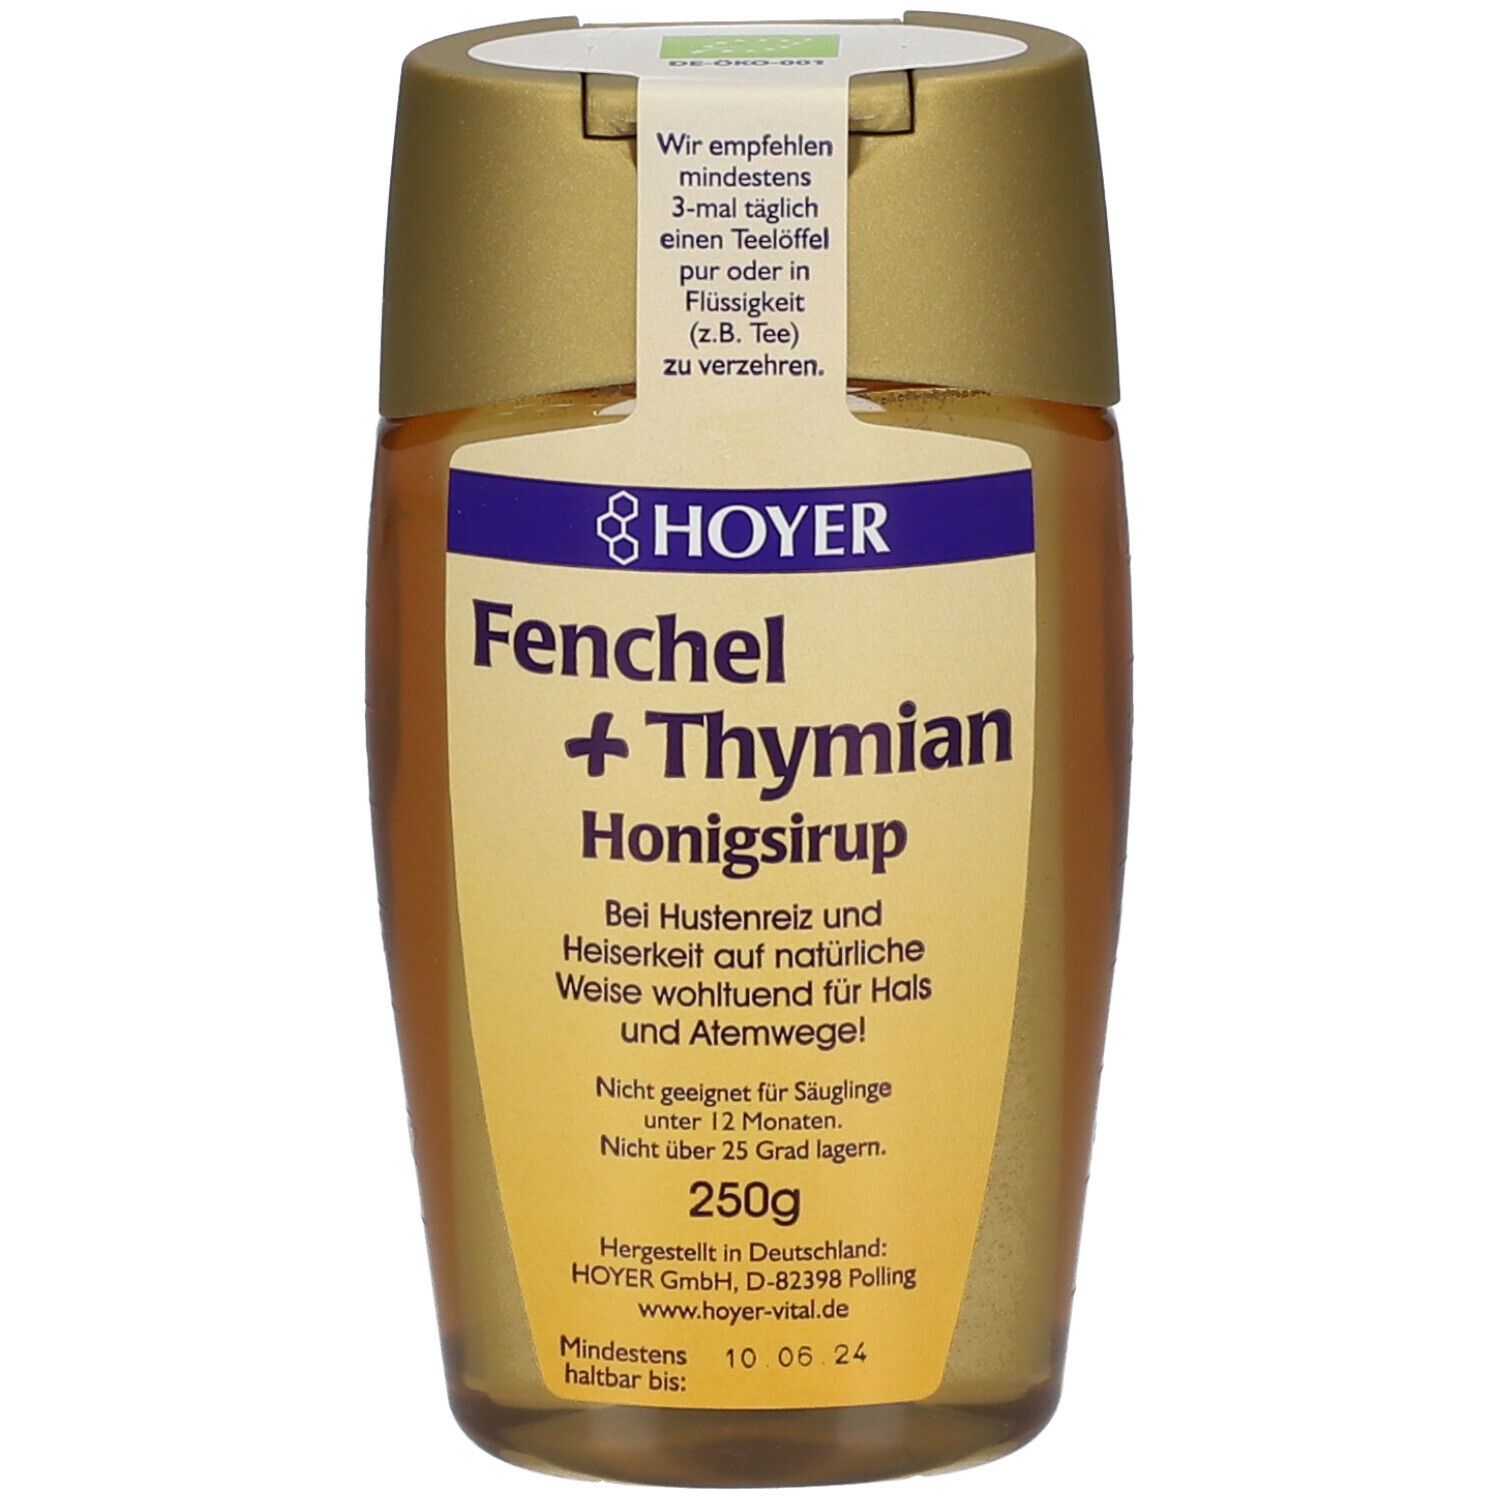 HOYER Fenchel + Thymian Honigsirup